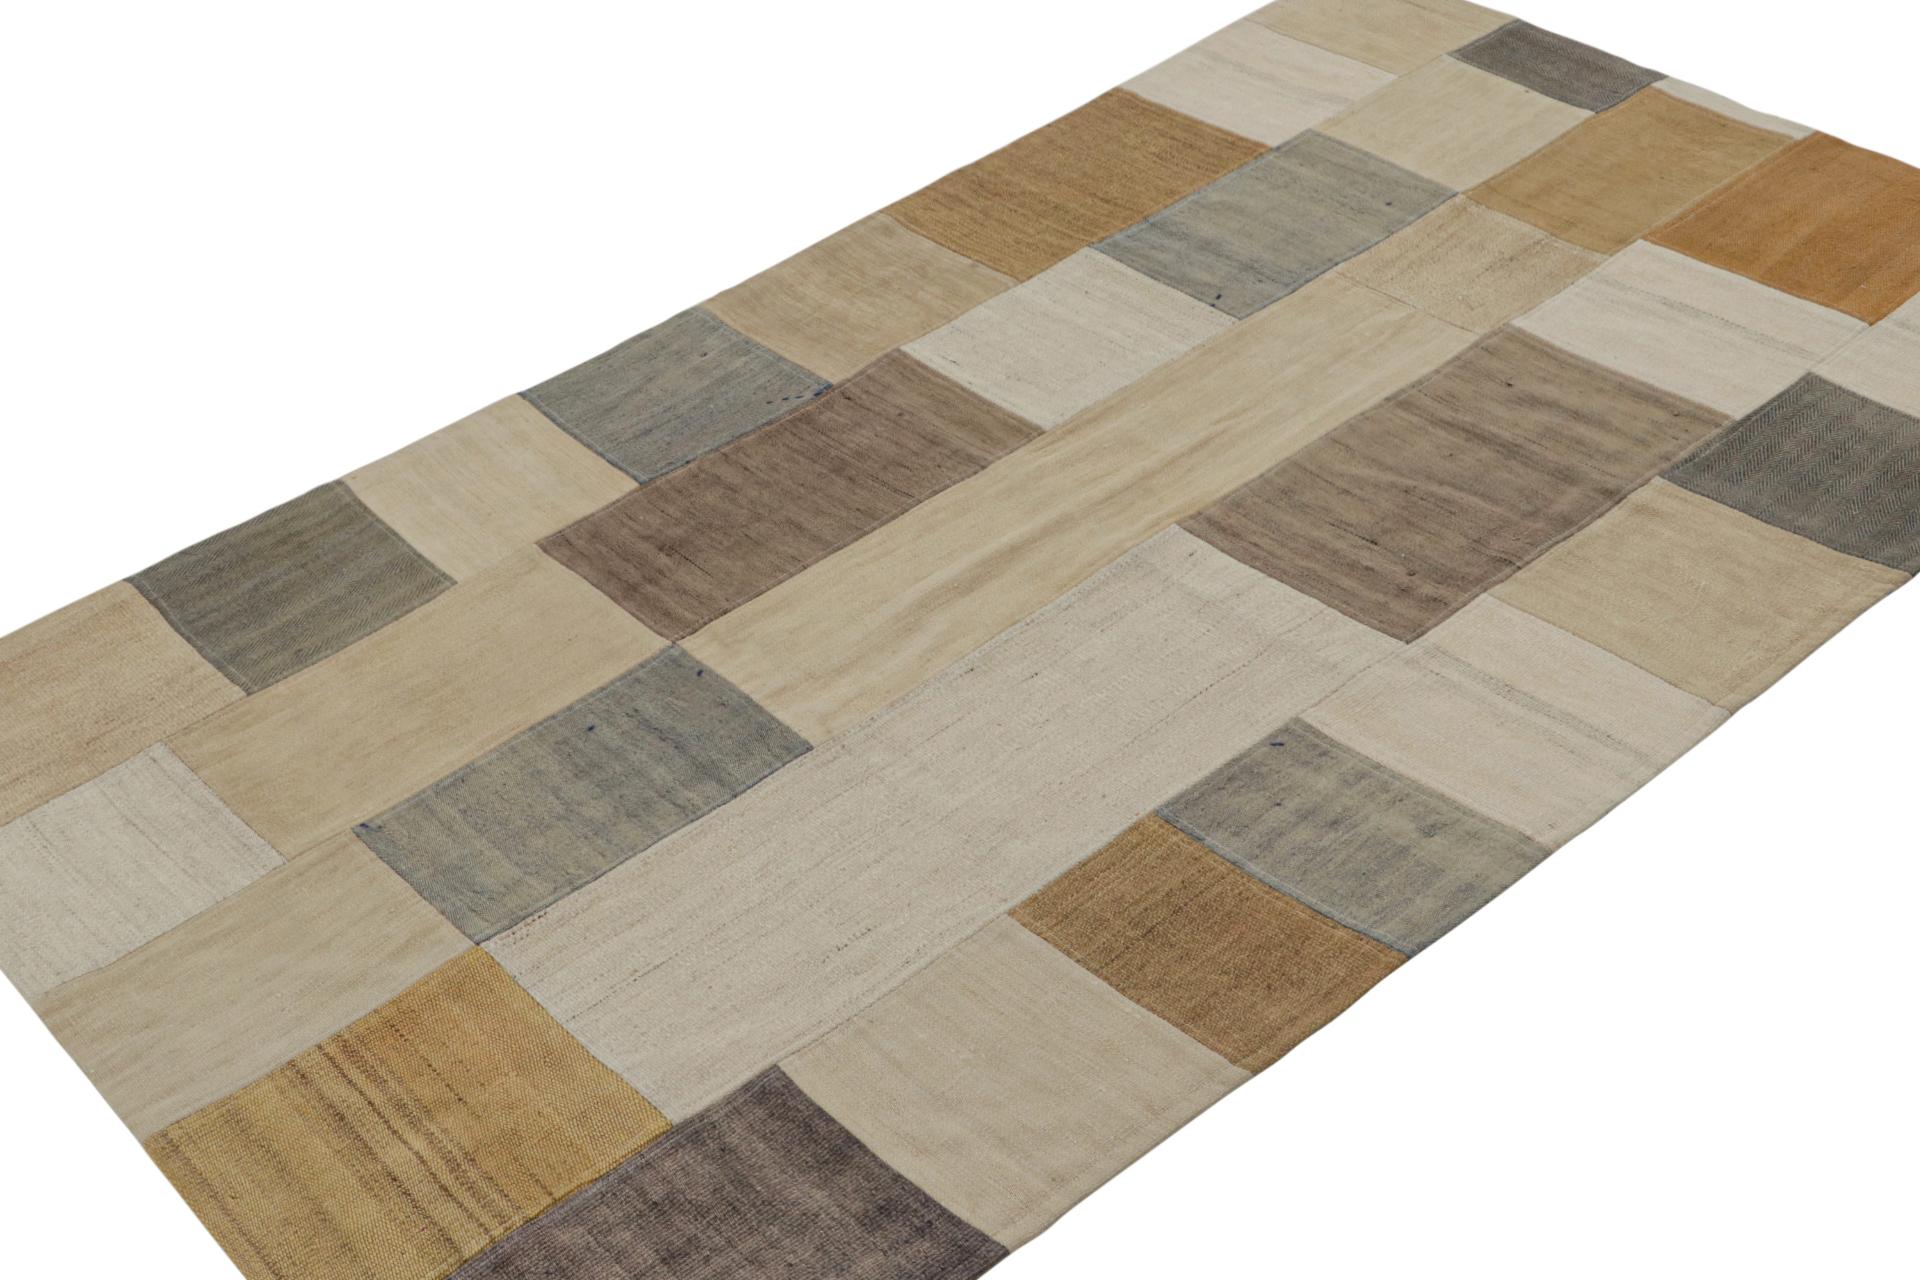 Dieser moderne 4 x 6 Kilim-Teppich aus der Patchwork Kilim-Kollektion von Rug & Kilim, der in einem Flachgewebe aus Wolle unter Verwendung von Vintage-Garnen handgewebt ist, verbindet die Inspiration von Flachgewebe-Teppichen aus der Mitte des